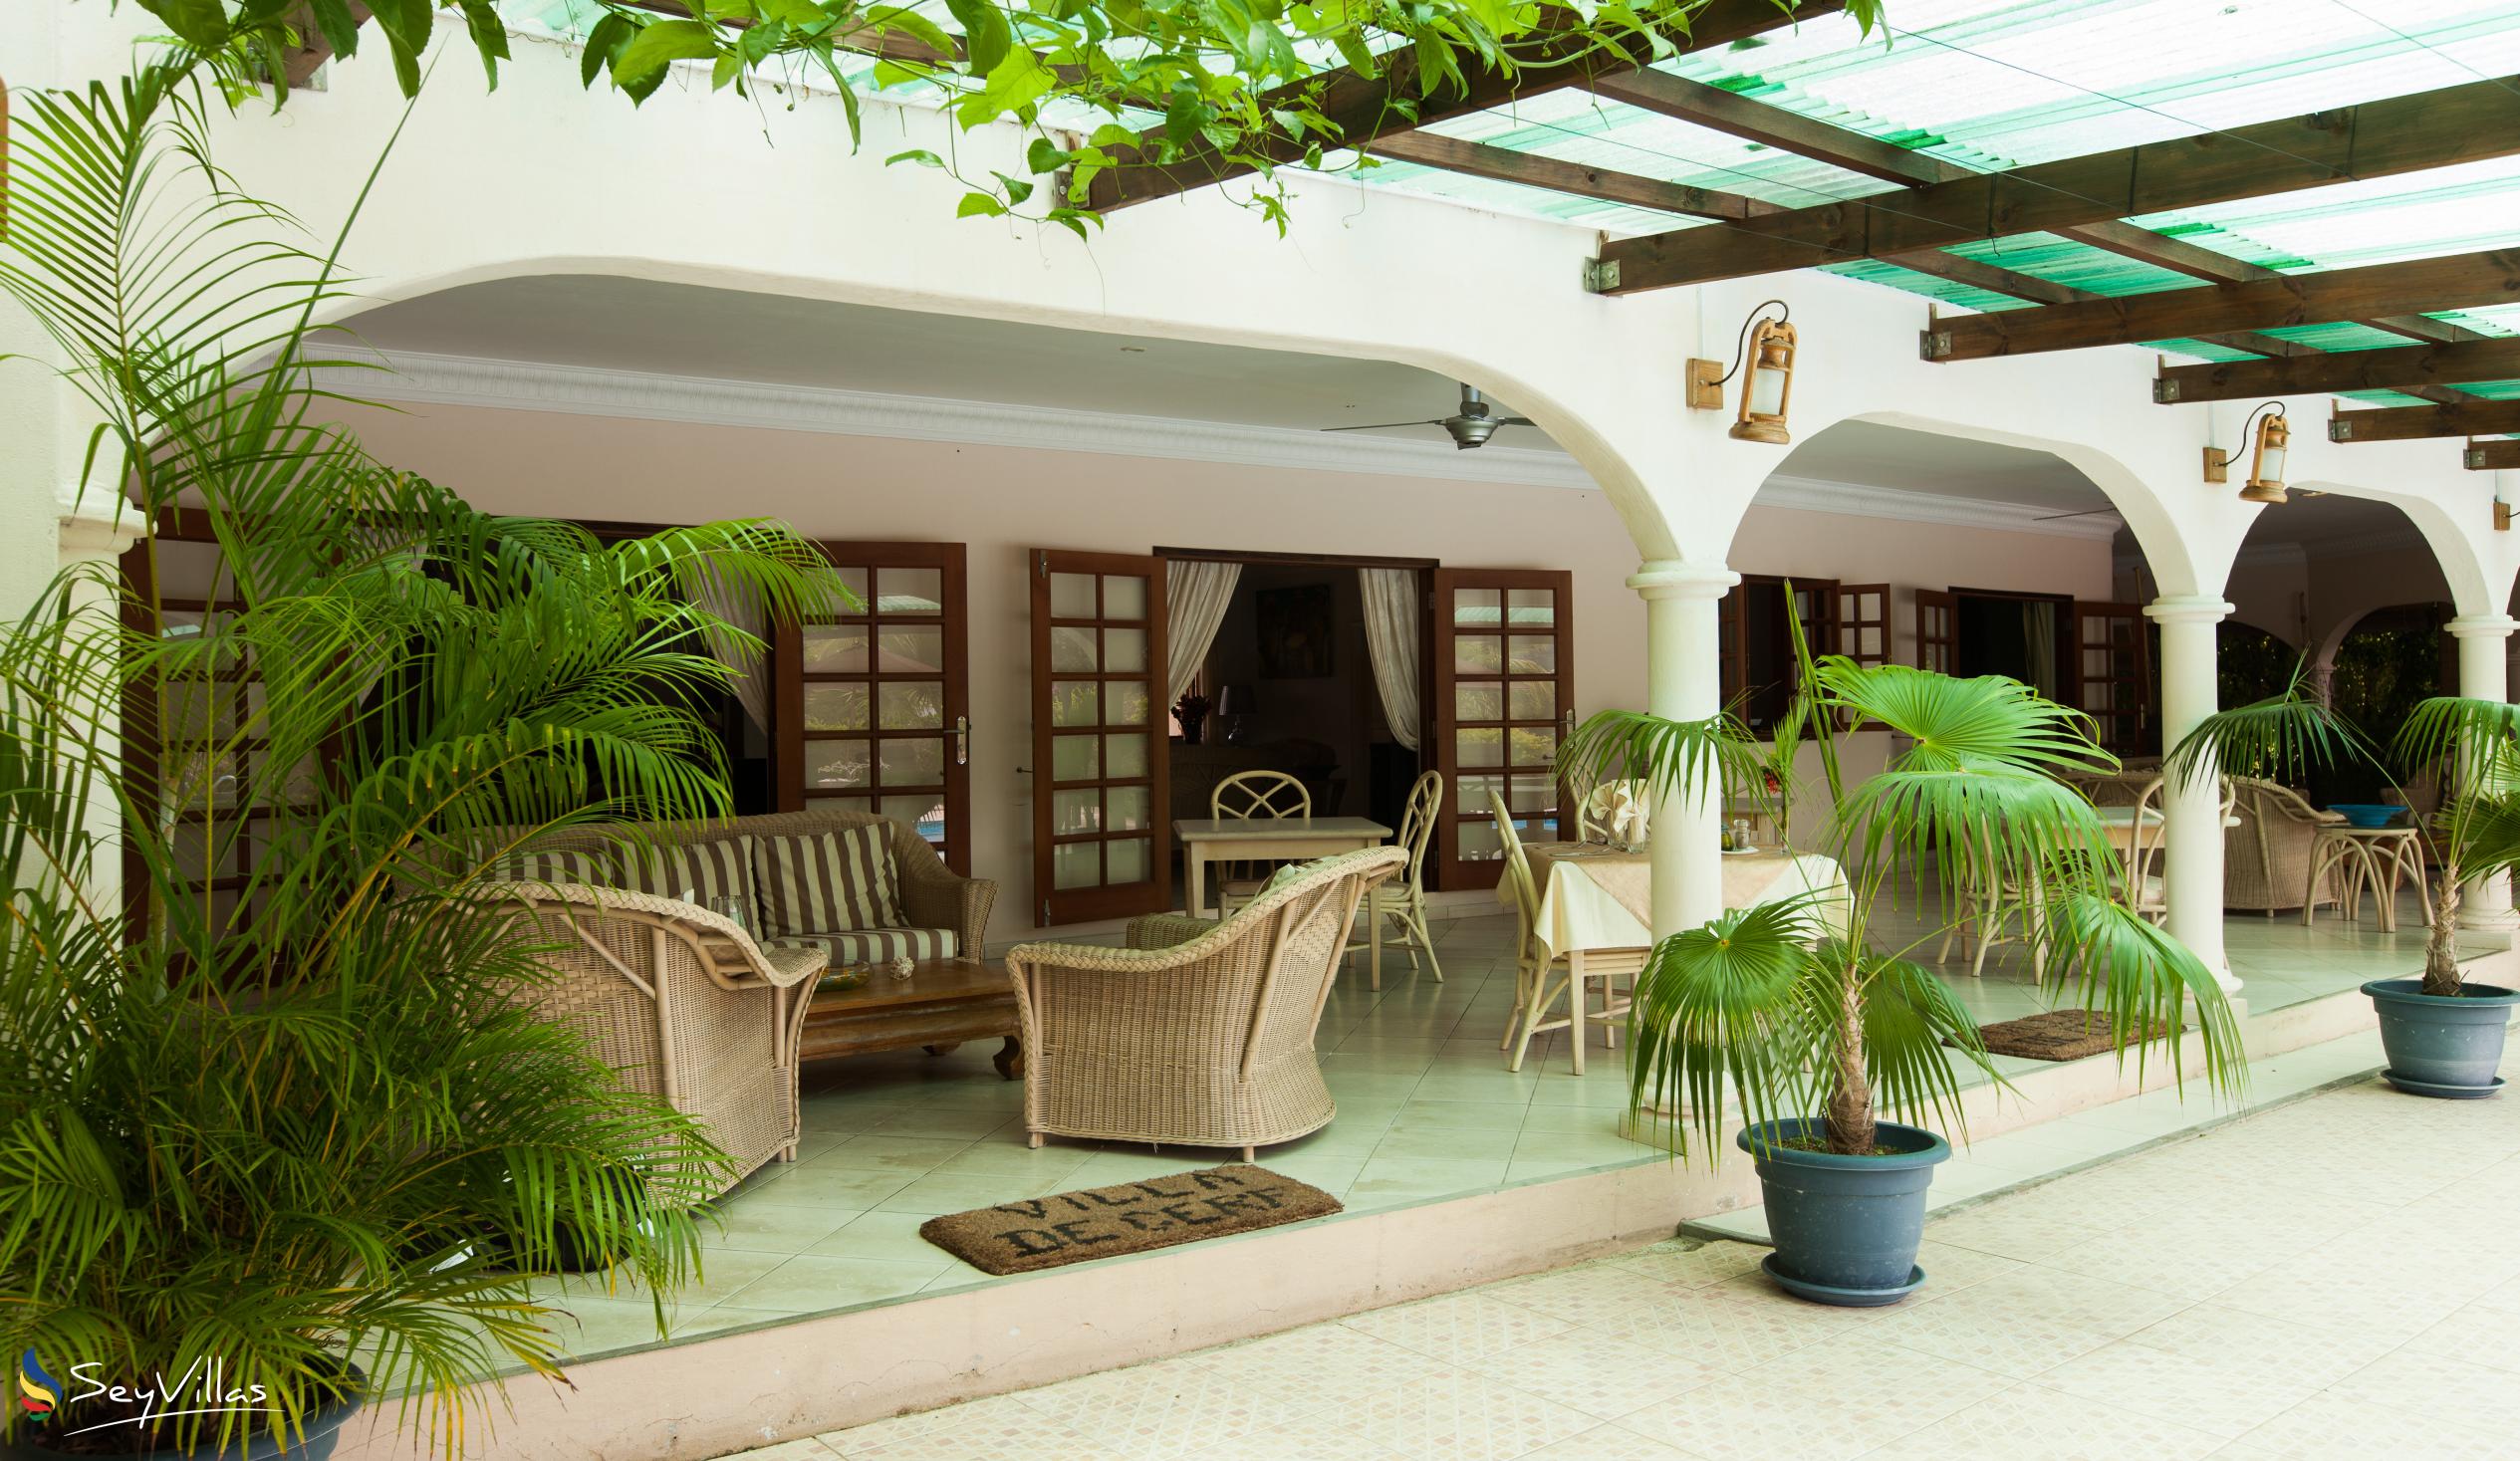 Foto 23: Villa de Cerf - Innenbereich - Cerf Island (Seychellen)